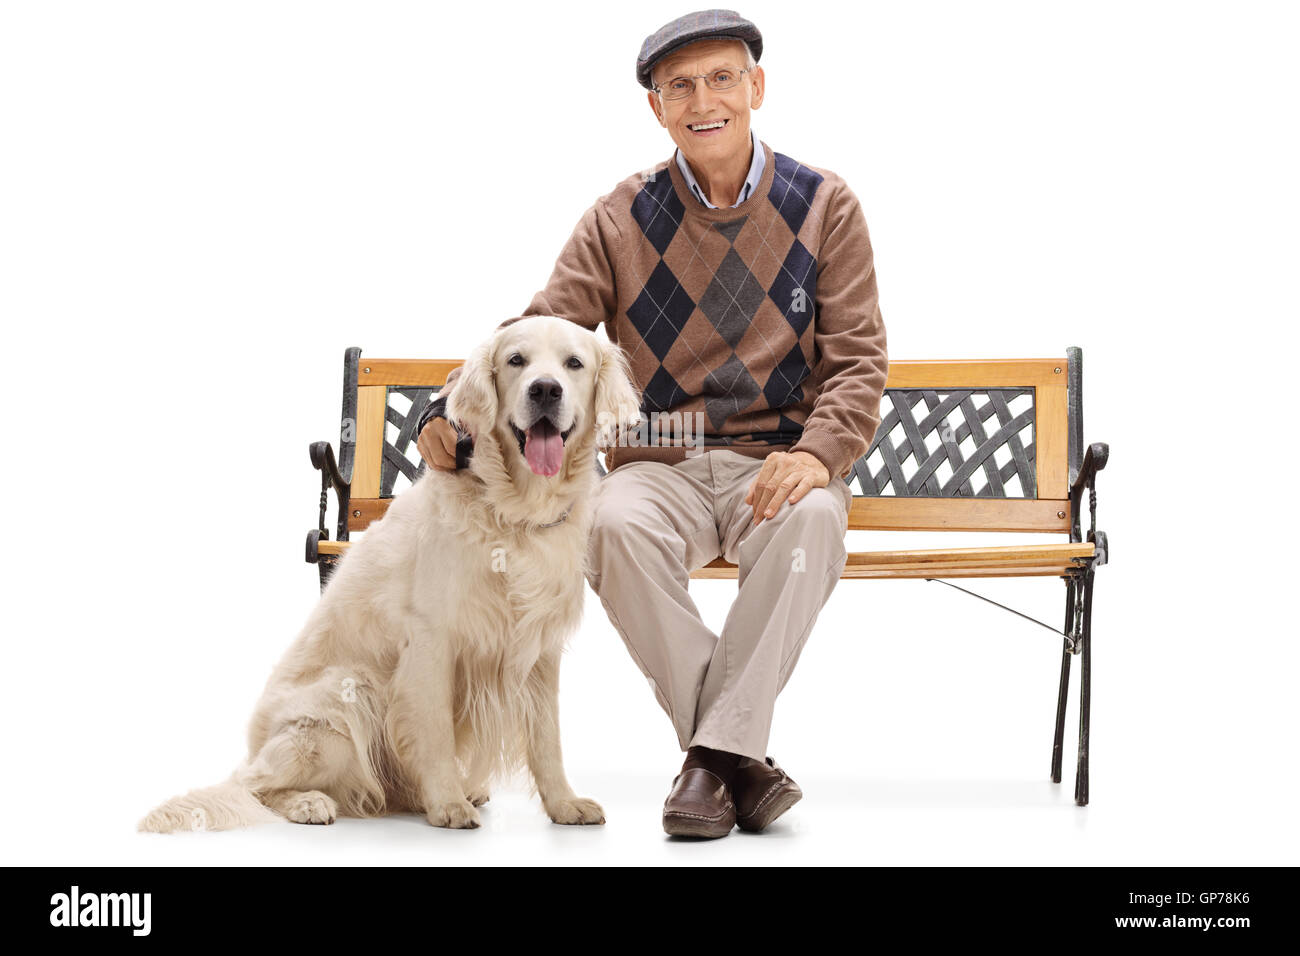 Hauts assis sur un banc avec son chien isolé sur fond blanc Banque D'Images